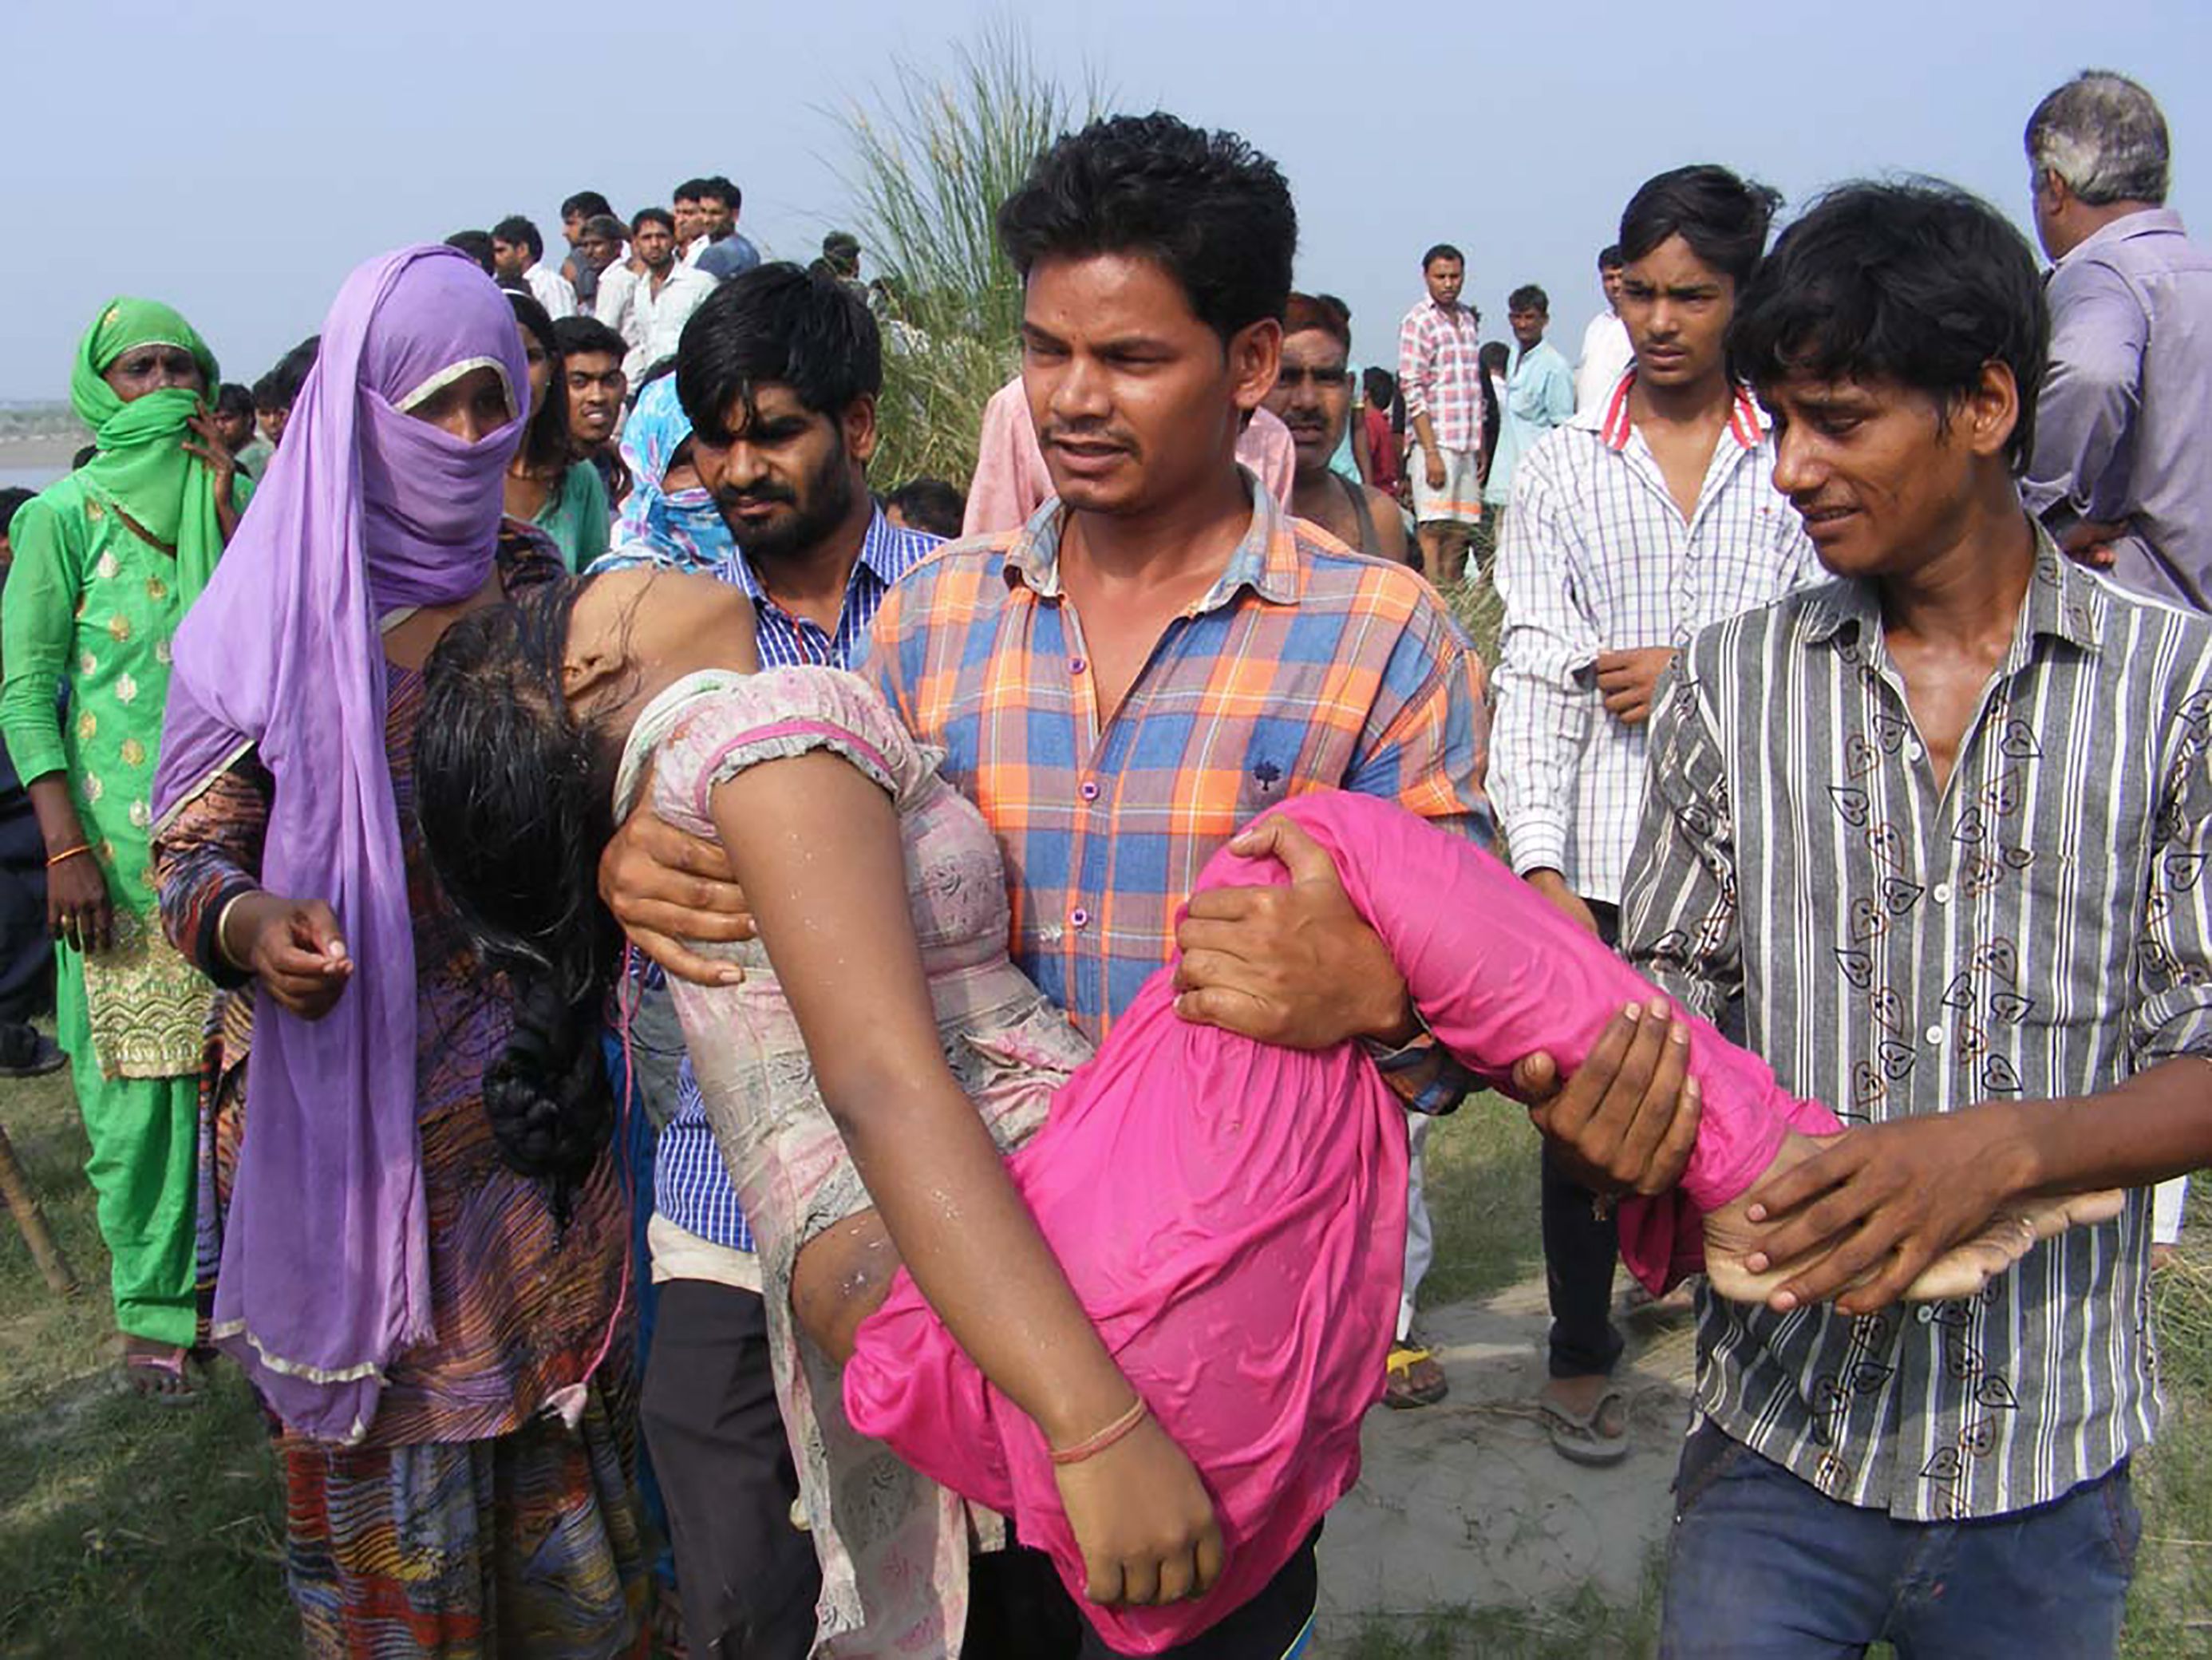 ضحايا حادث الهند